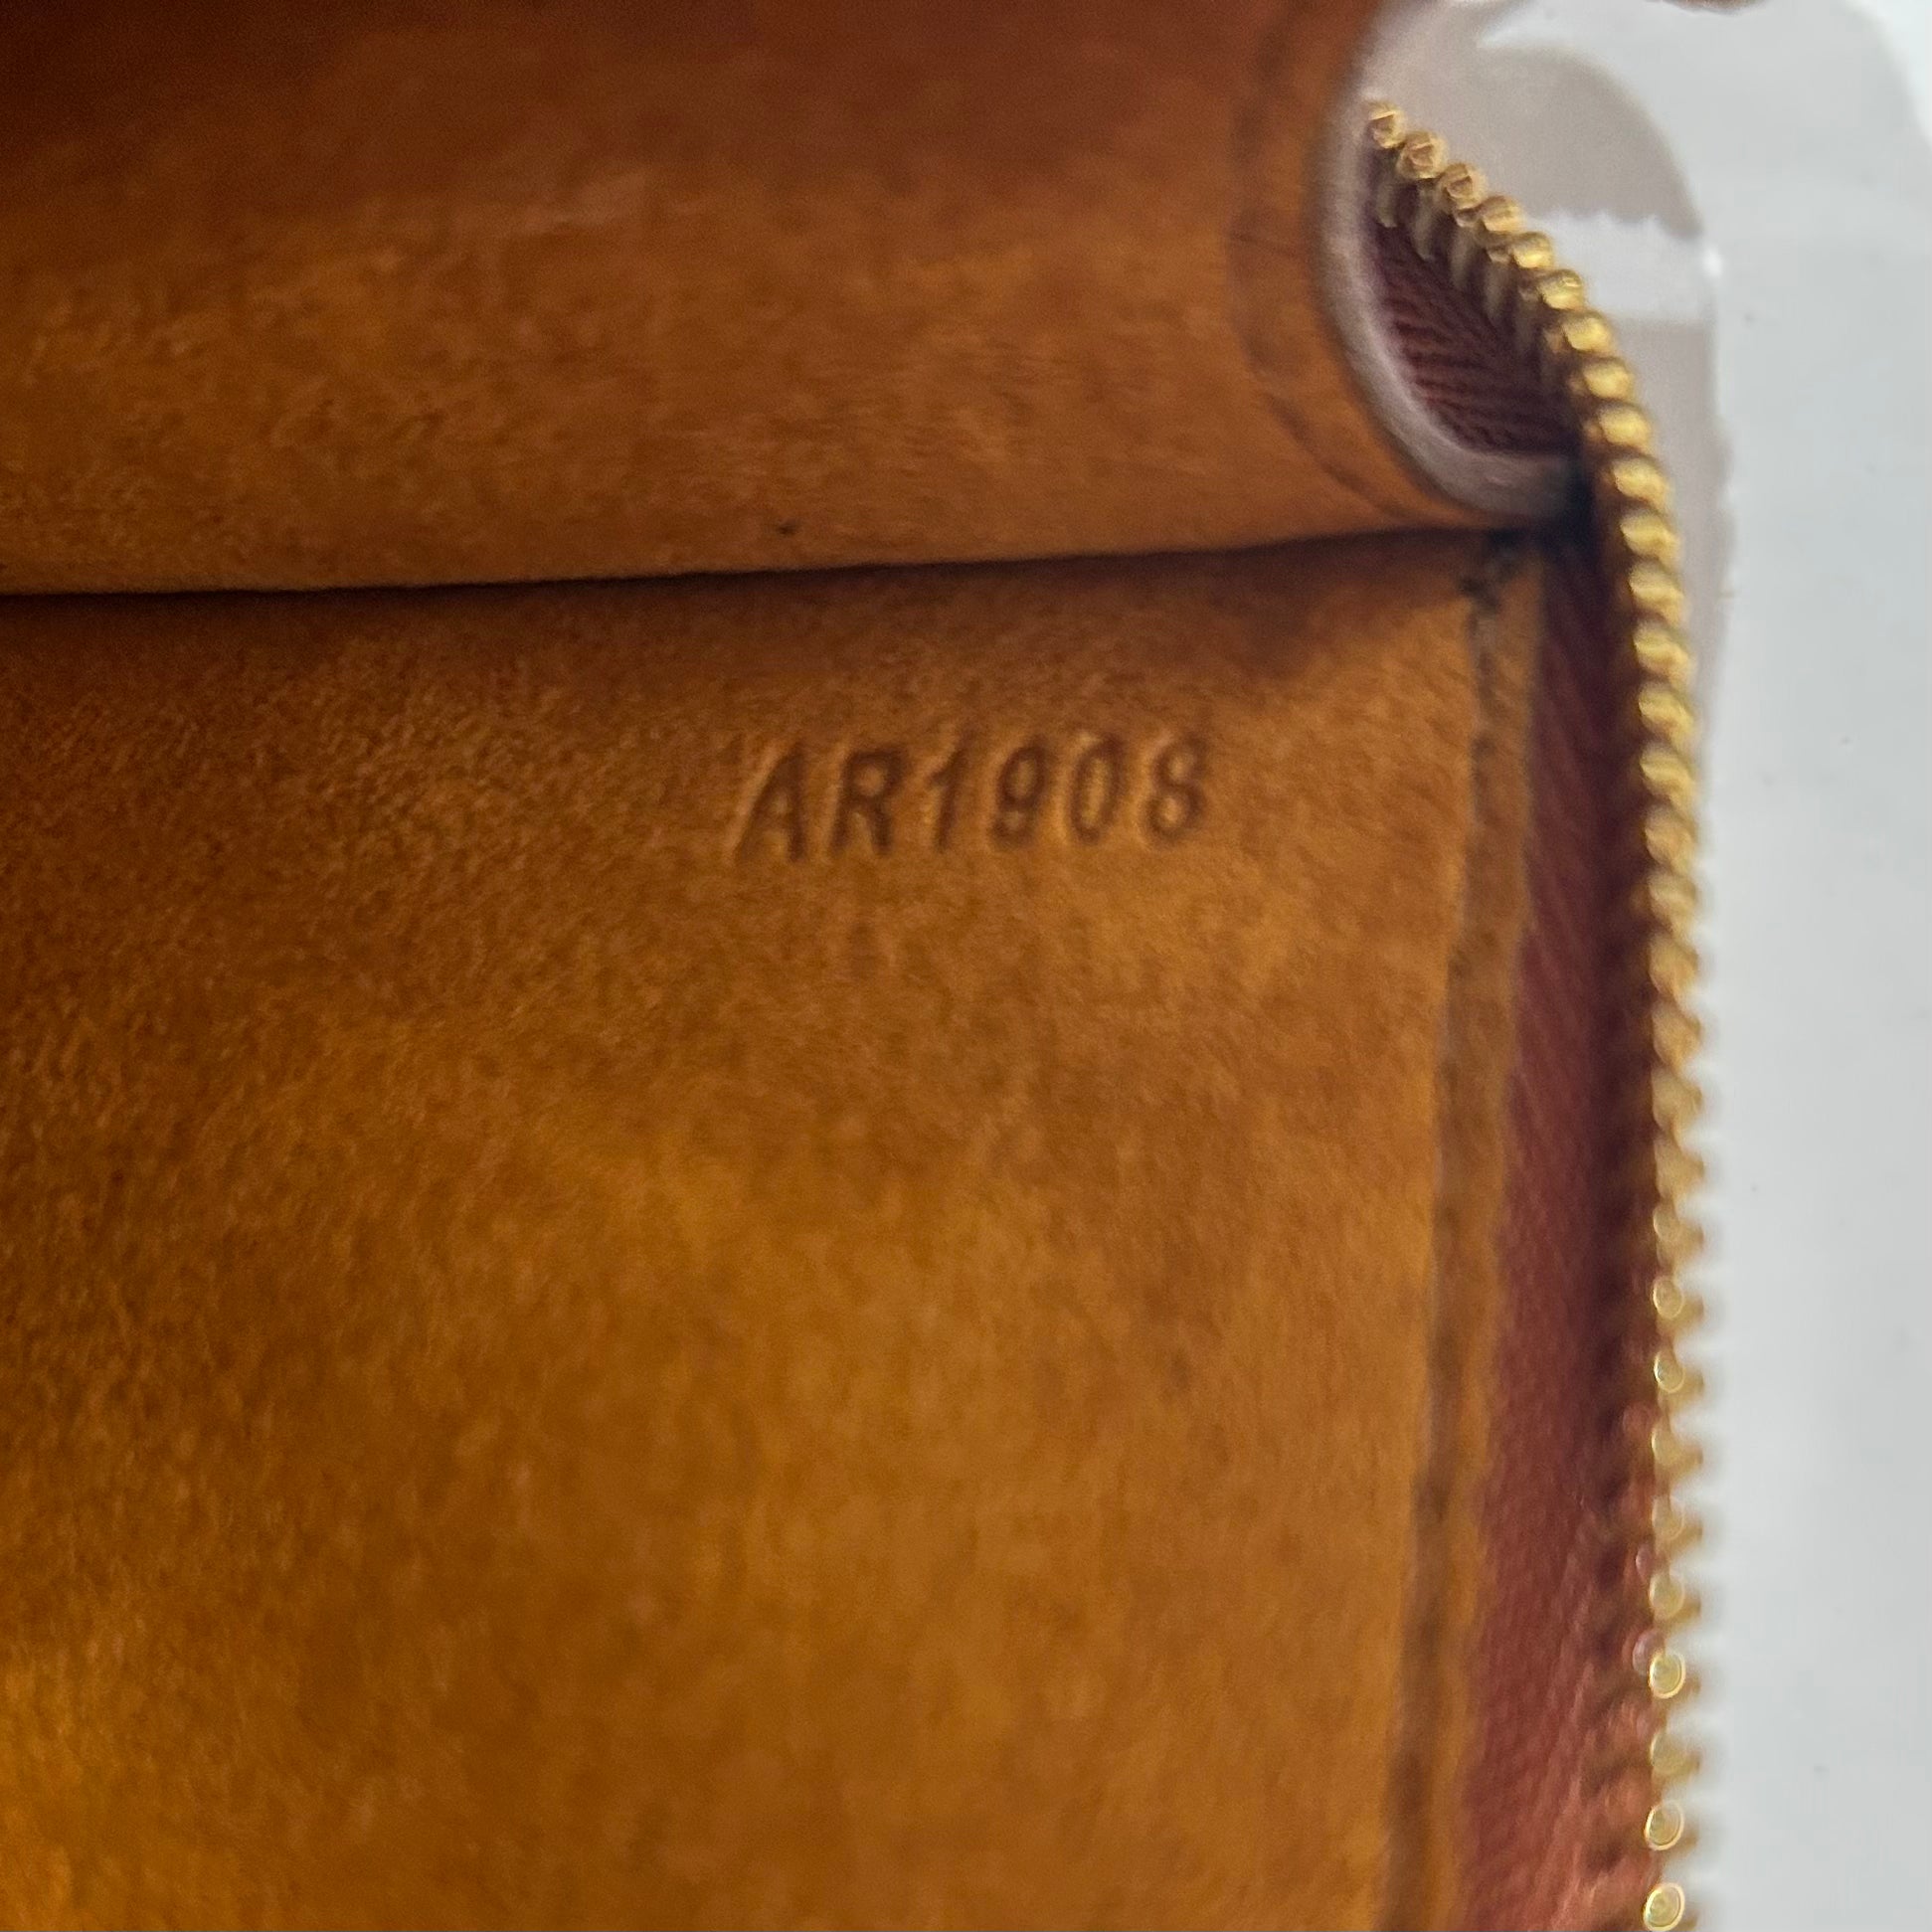 Louis Vuitton Vintage - Epi Zippy Wallet - Orange - Leather and